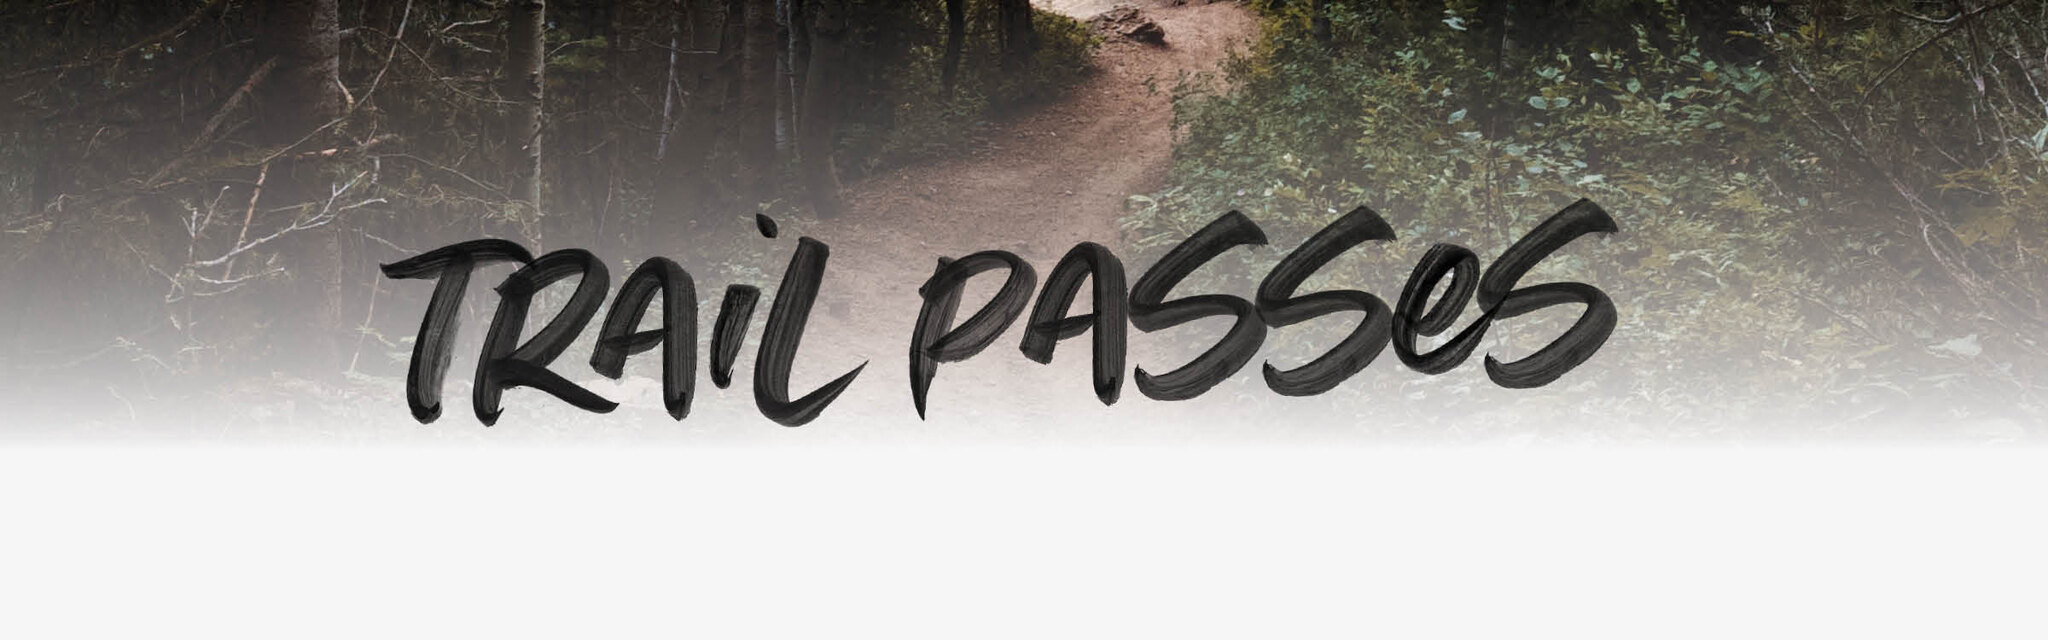 Trail Passes